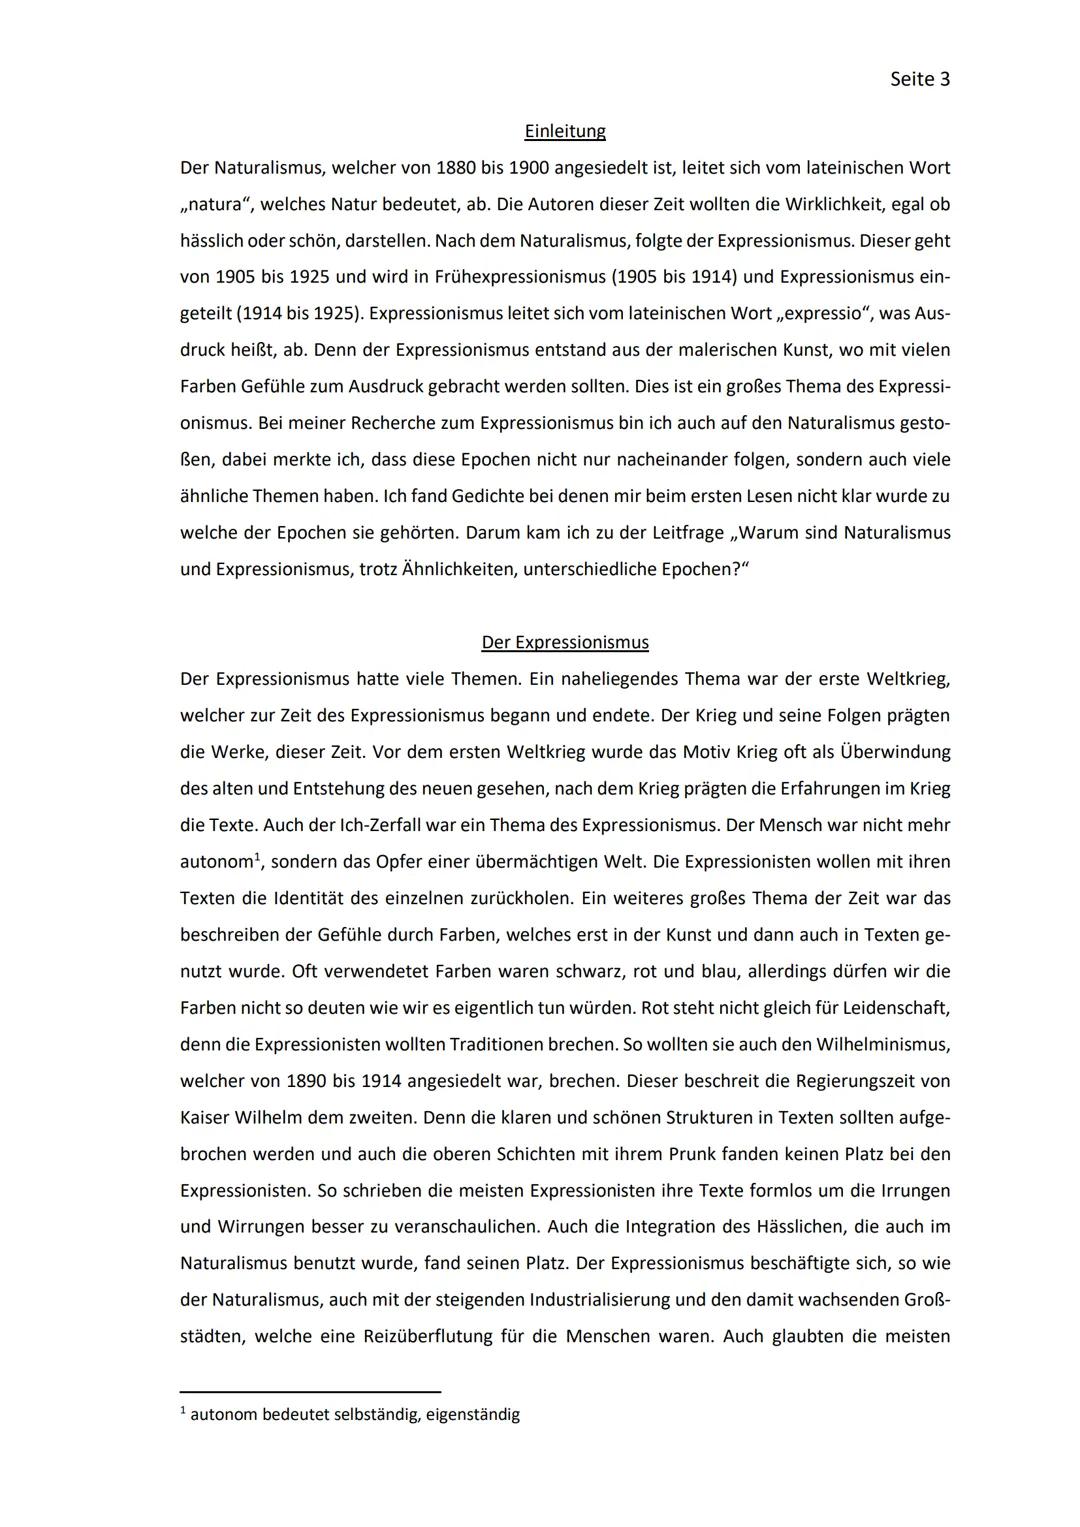 Facharbeit
Deutsche Literatur - Epochen
Der Expressionismus 1
2.1
2 MERKMALE DES EXPRESSIONISMUS...
3
3.1
Inhaltsverzeichnis
EINLEITUNG.....